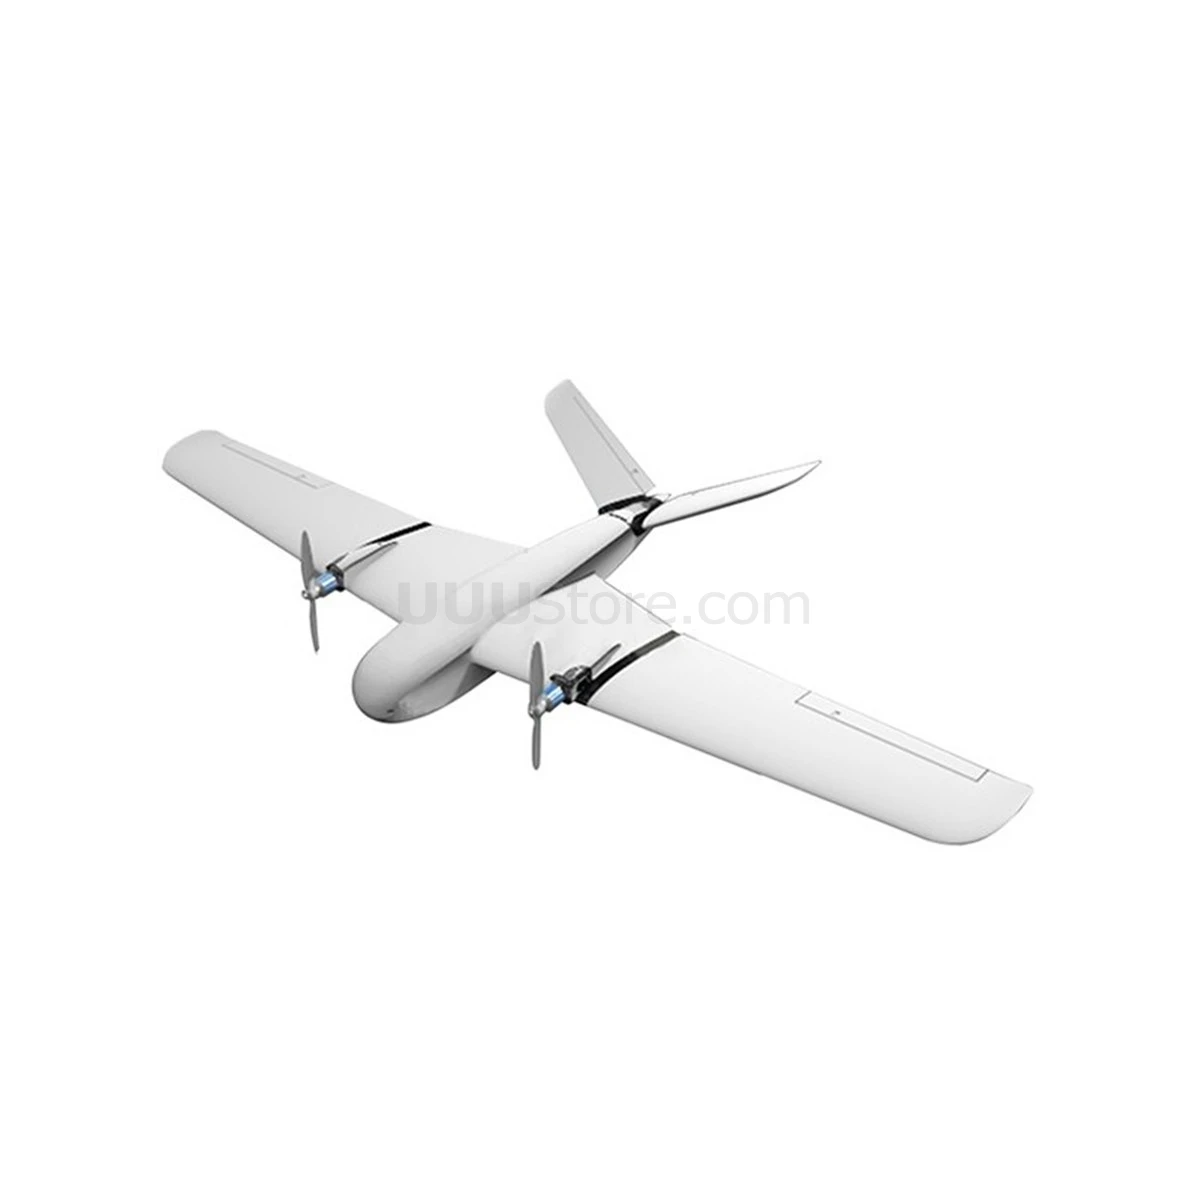 X-UAV Clouds 1880mm Wingspan EPO FPV / Aerial version Aircraft RC Airplane KIT 1